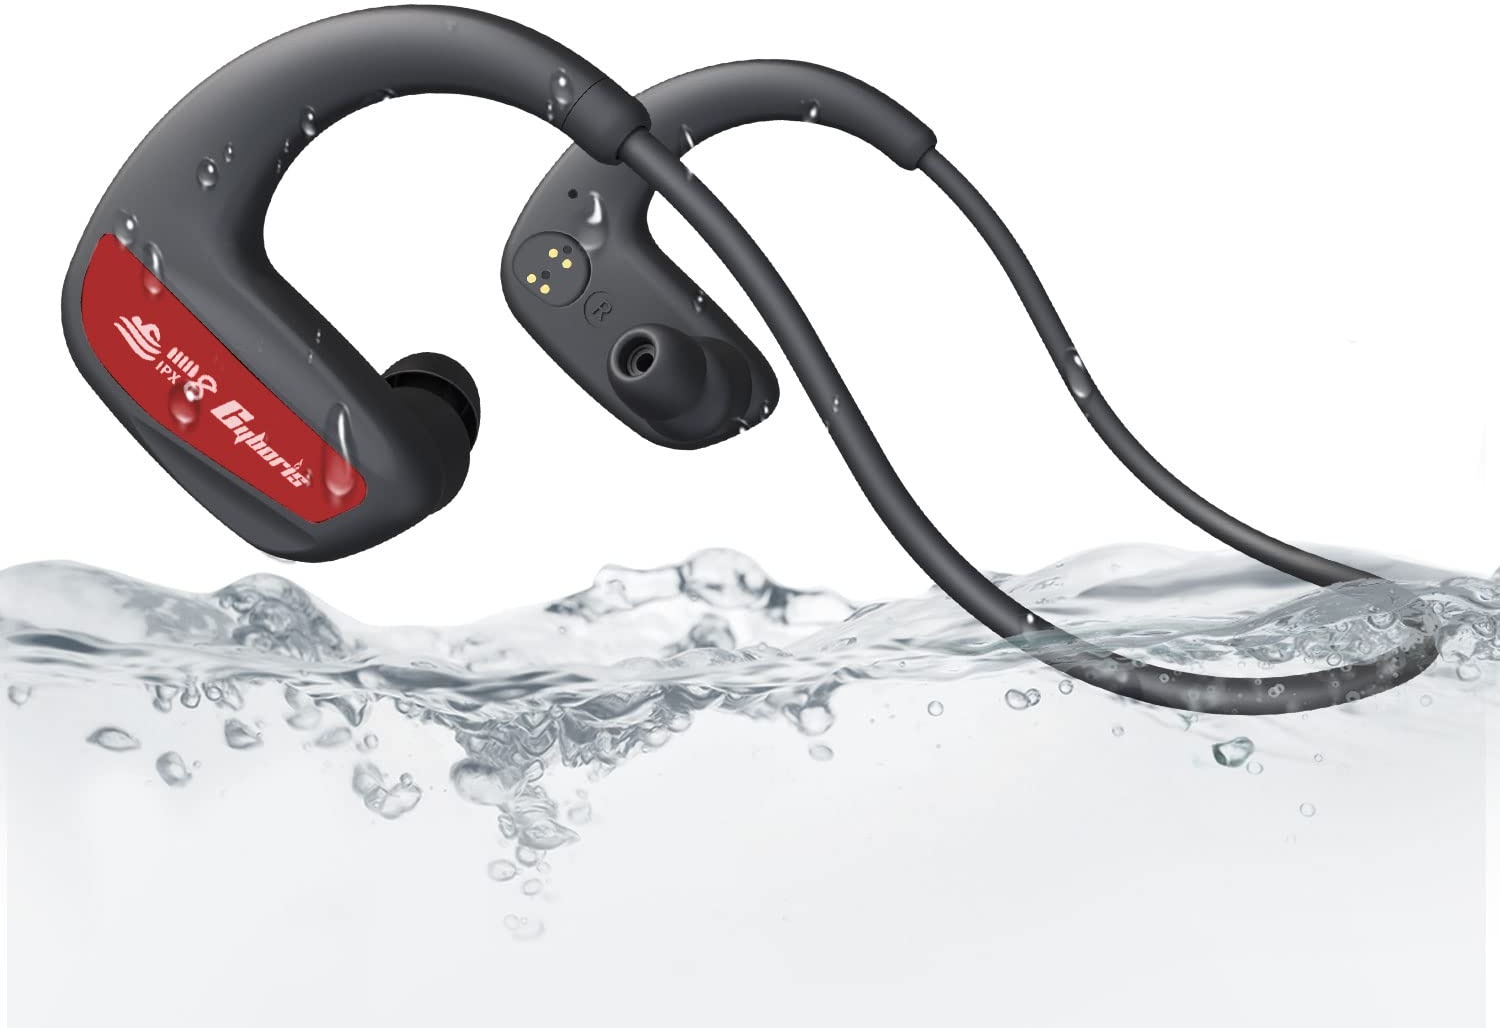 CYBORIS wasserdichte Kopfhörer Schwimmen, Bluetooth Kopfhörer In-Ear IPX8 MP3 Kopfhörer 16GB - Mit Knochenschall wasserdichte Lautsprecher, Kabellose Sportkopfhörer für Laufen, Tauchen, Schwimmen